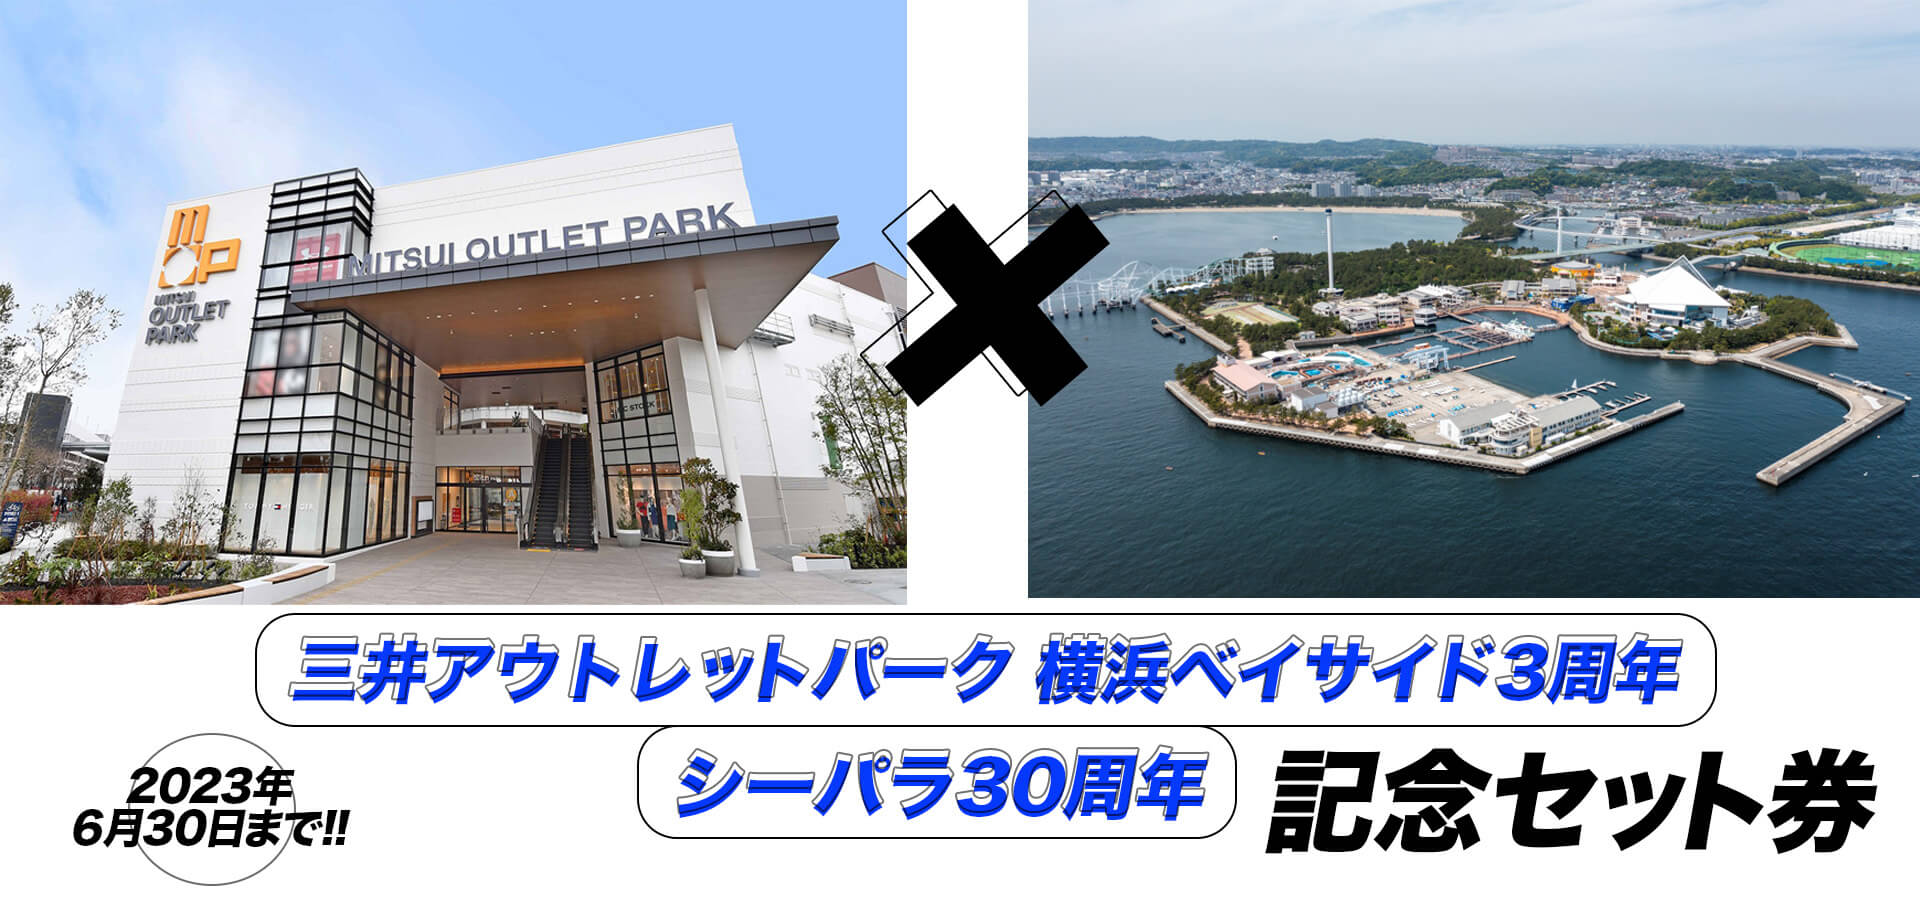 三井アウトレットパーク 横浜ベイサイド3周年×シーパラ30周年記念チケット